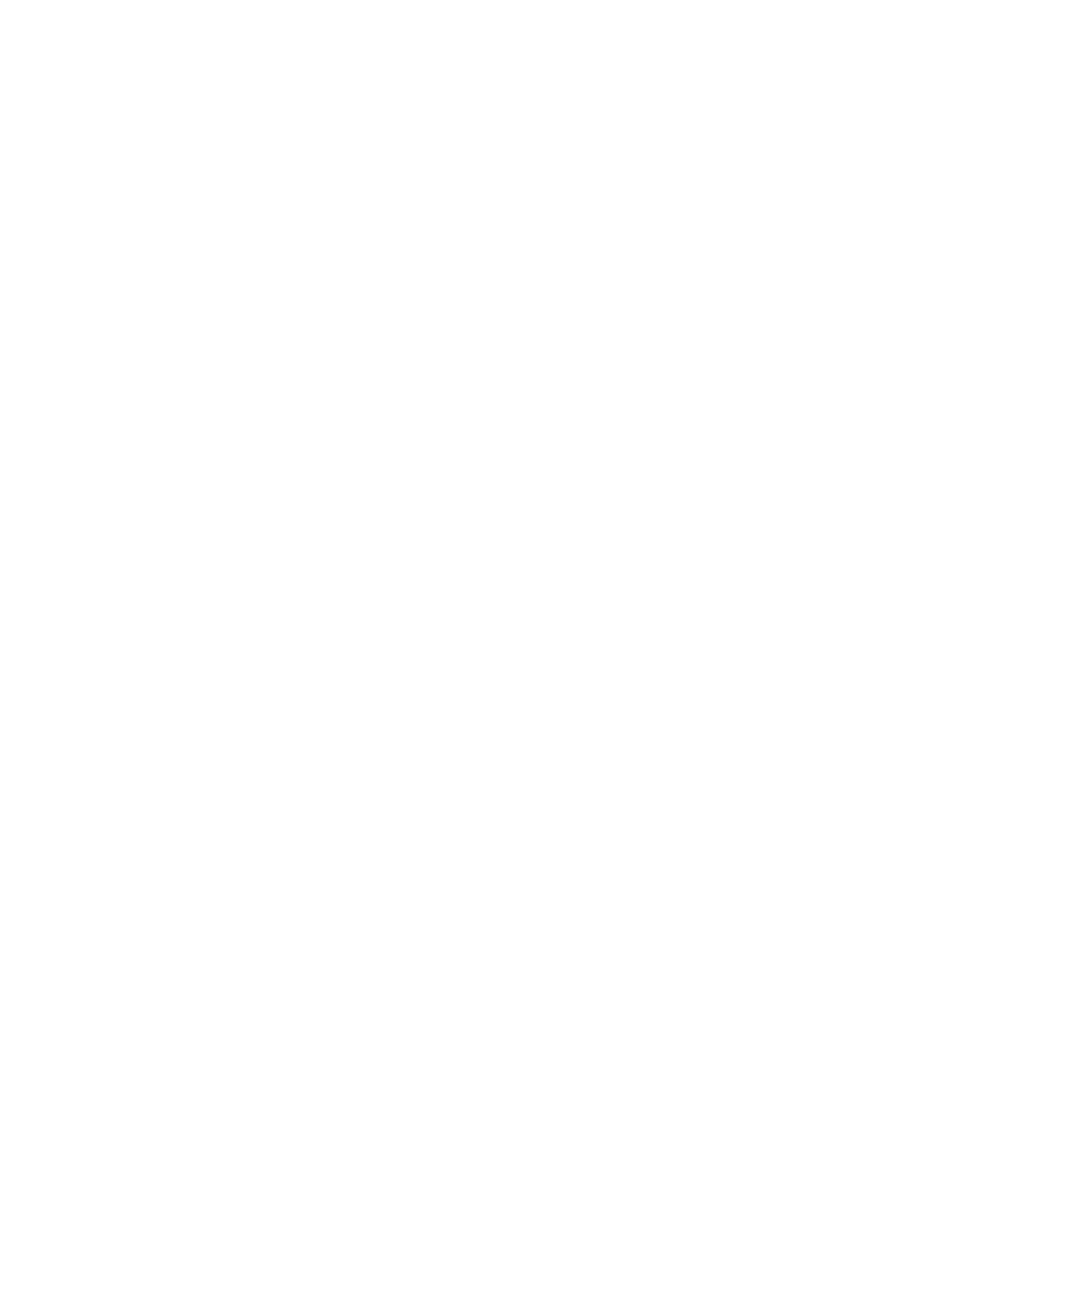 Quantum Leap Logo